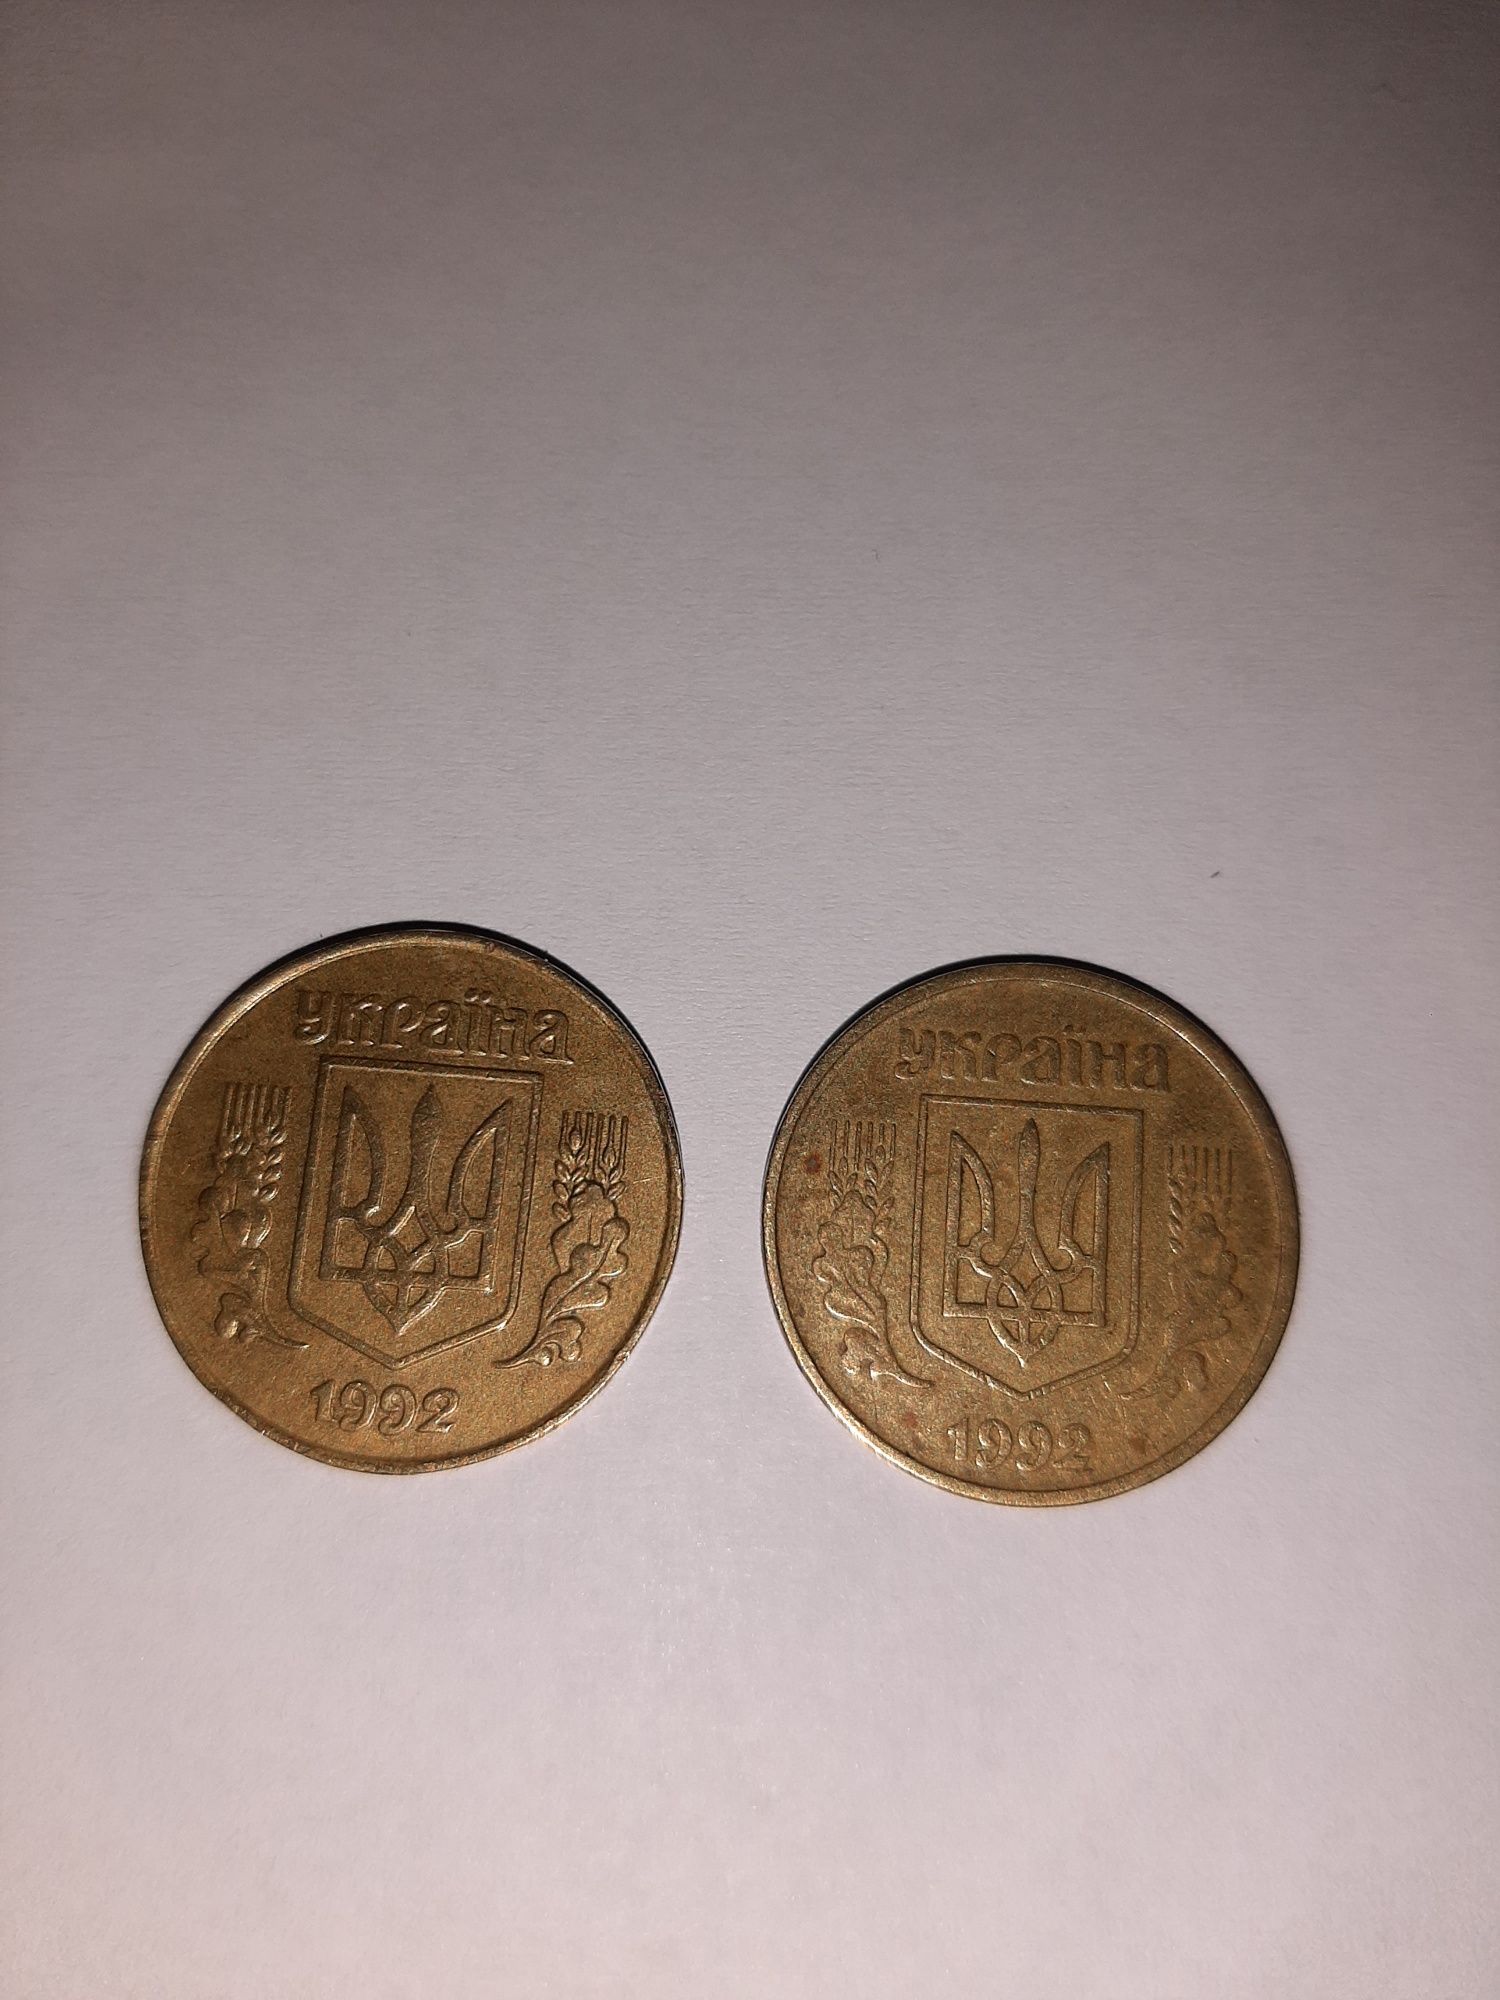 25 коп Україна 1992 року